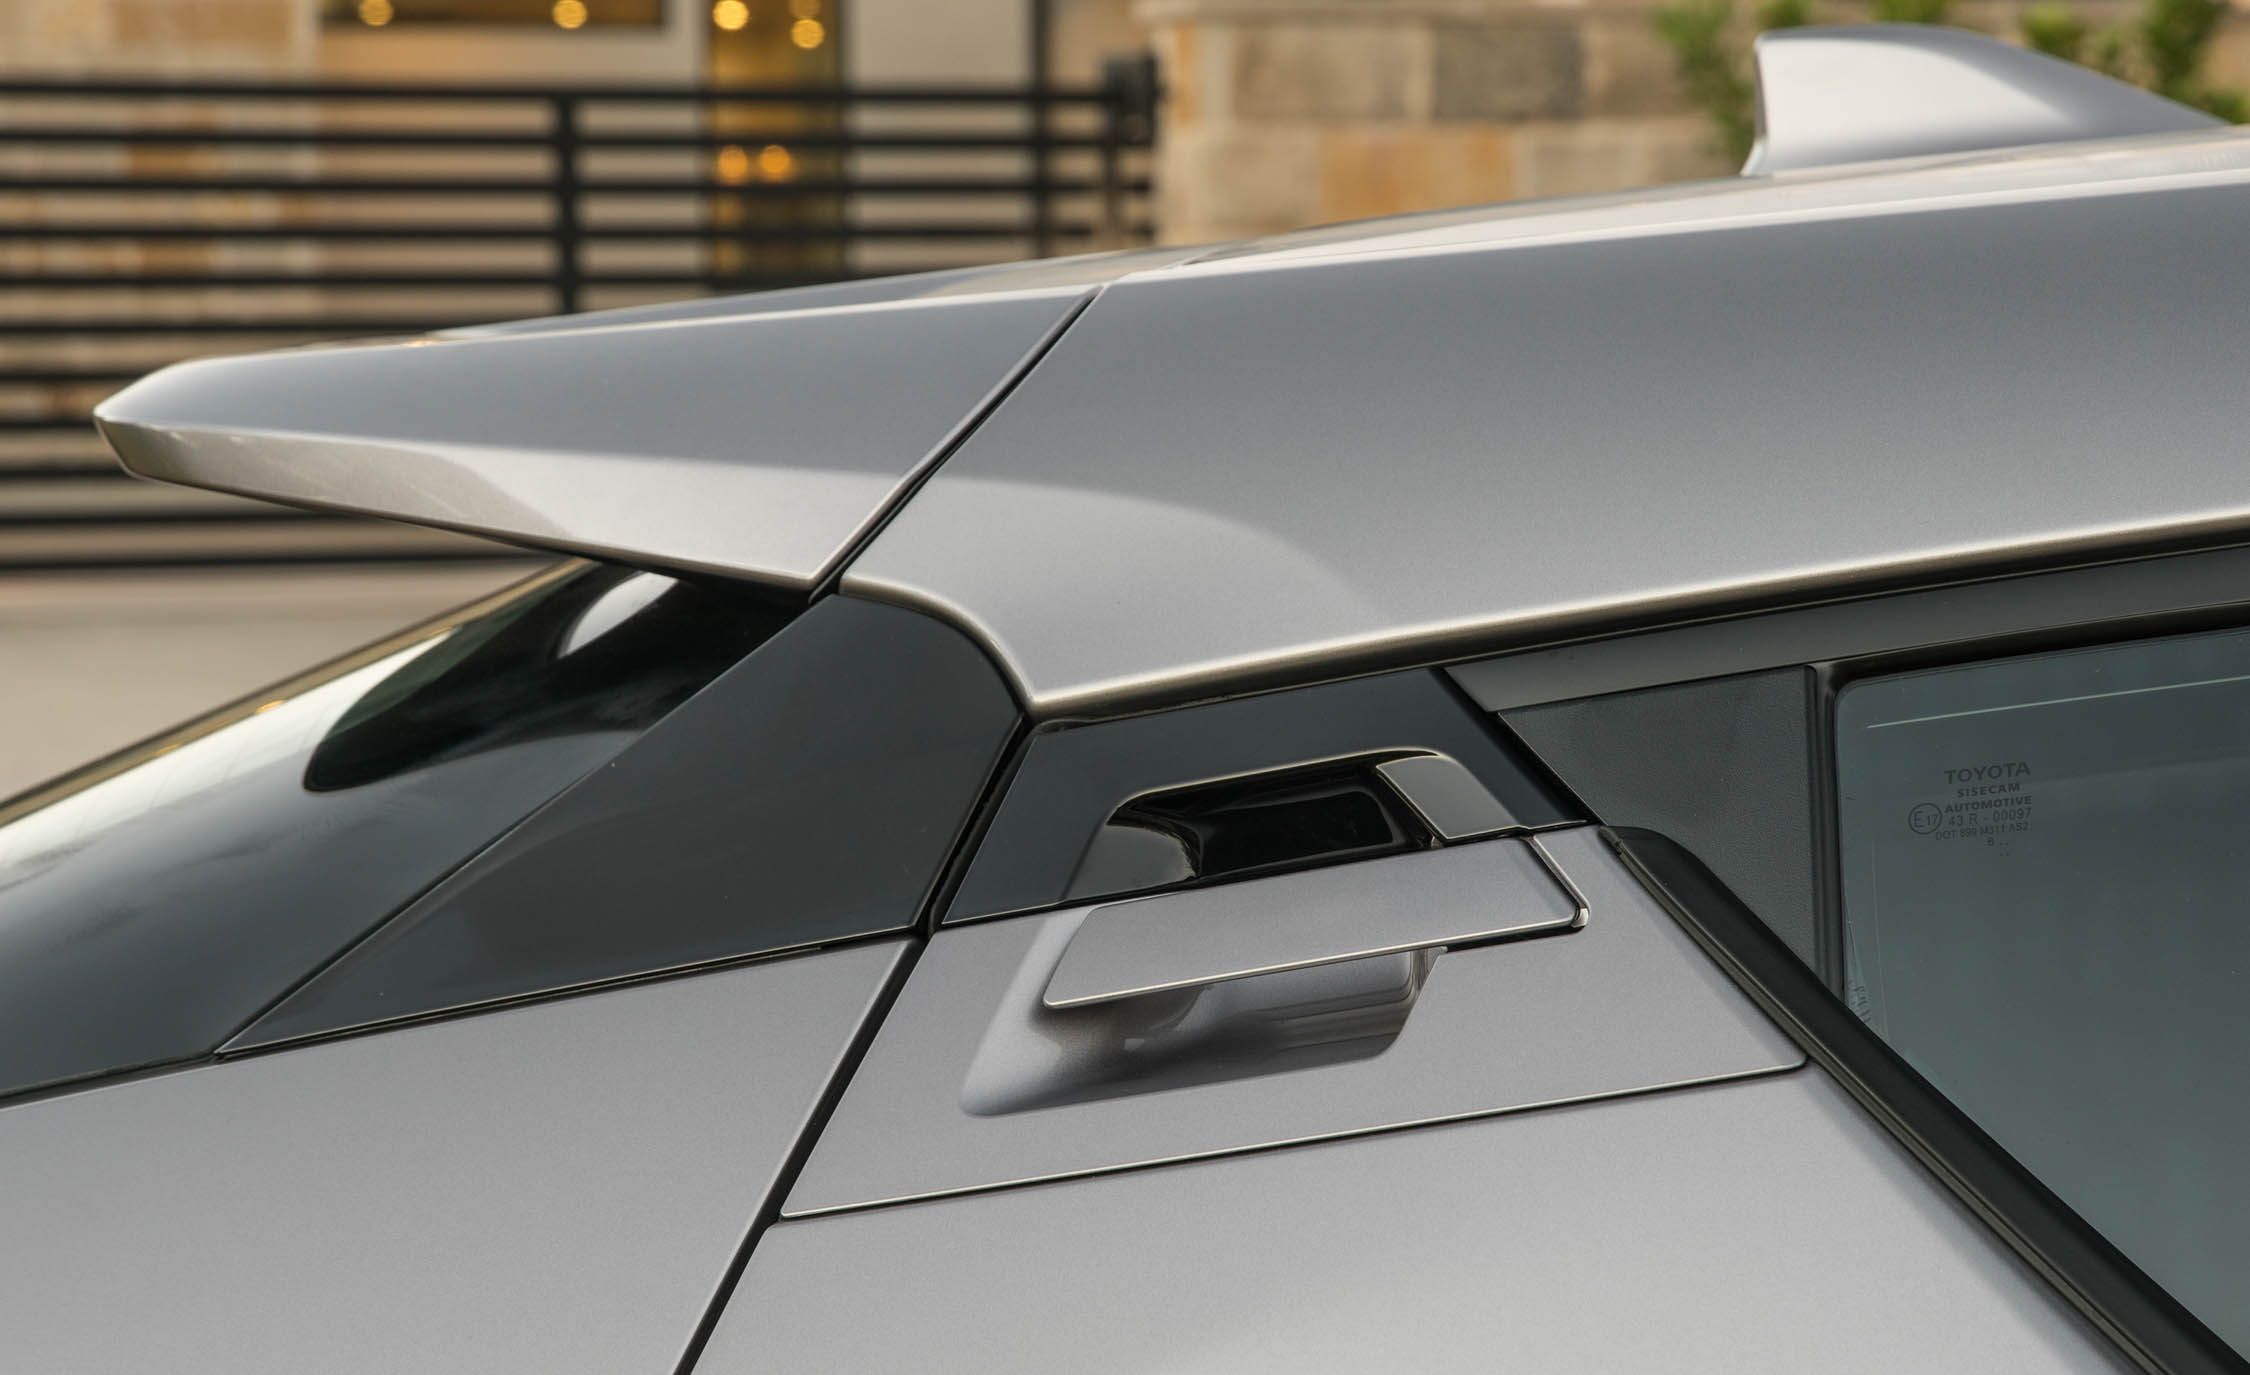 2018 Toyota C Hr Silver Metallic Exterior View Door Handle (View 21 of 33)